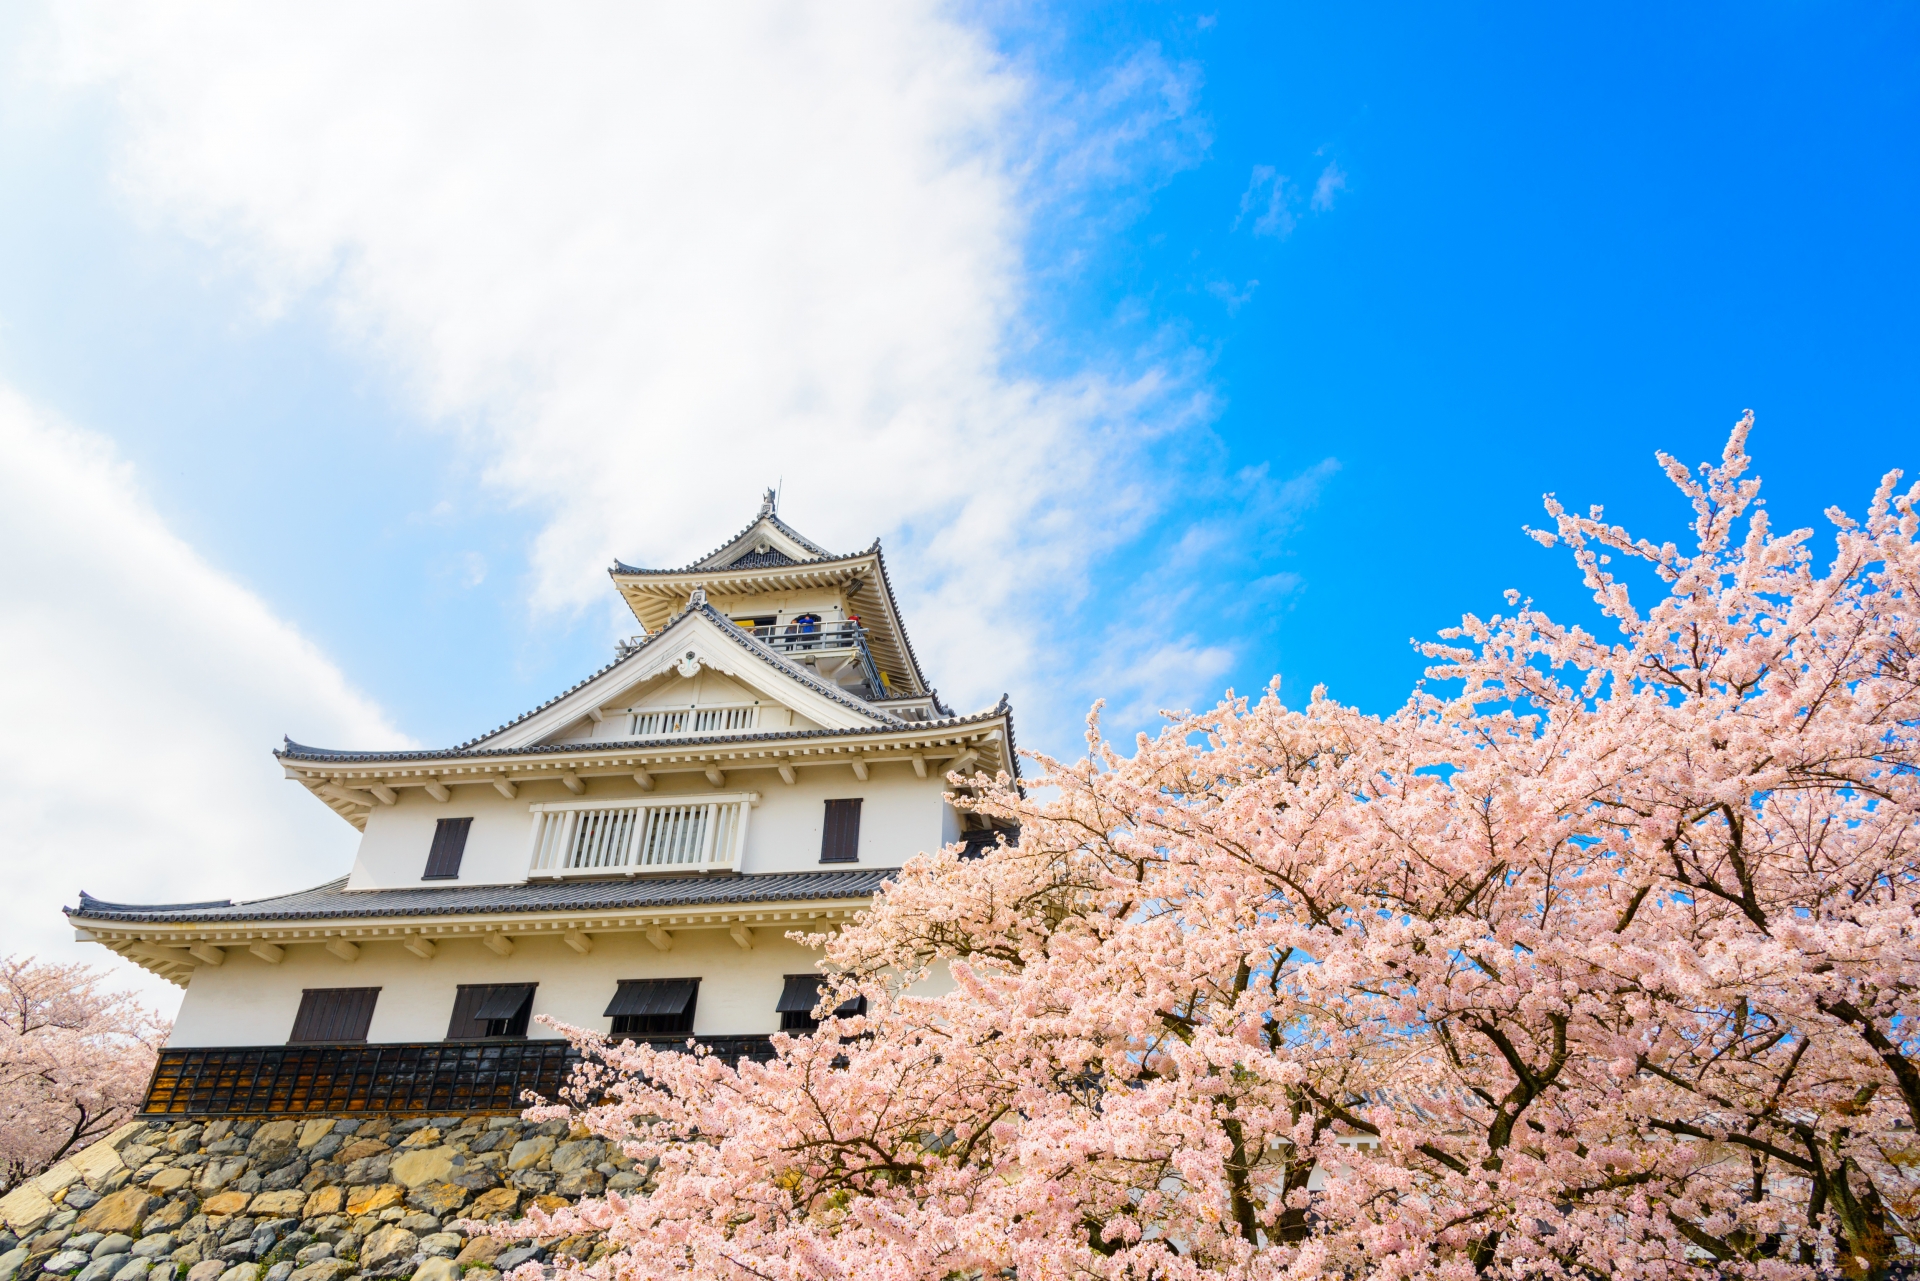 長浜城 豊公園 の桜21 開花状況やライトアップなど紹介 情報発信ブログサイト Blue Rose